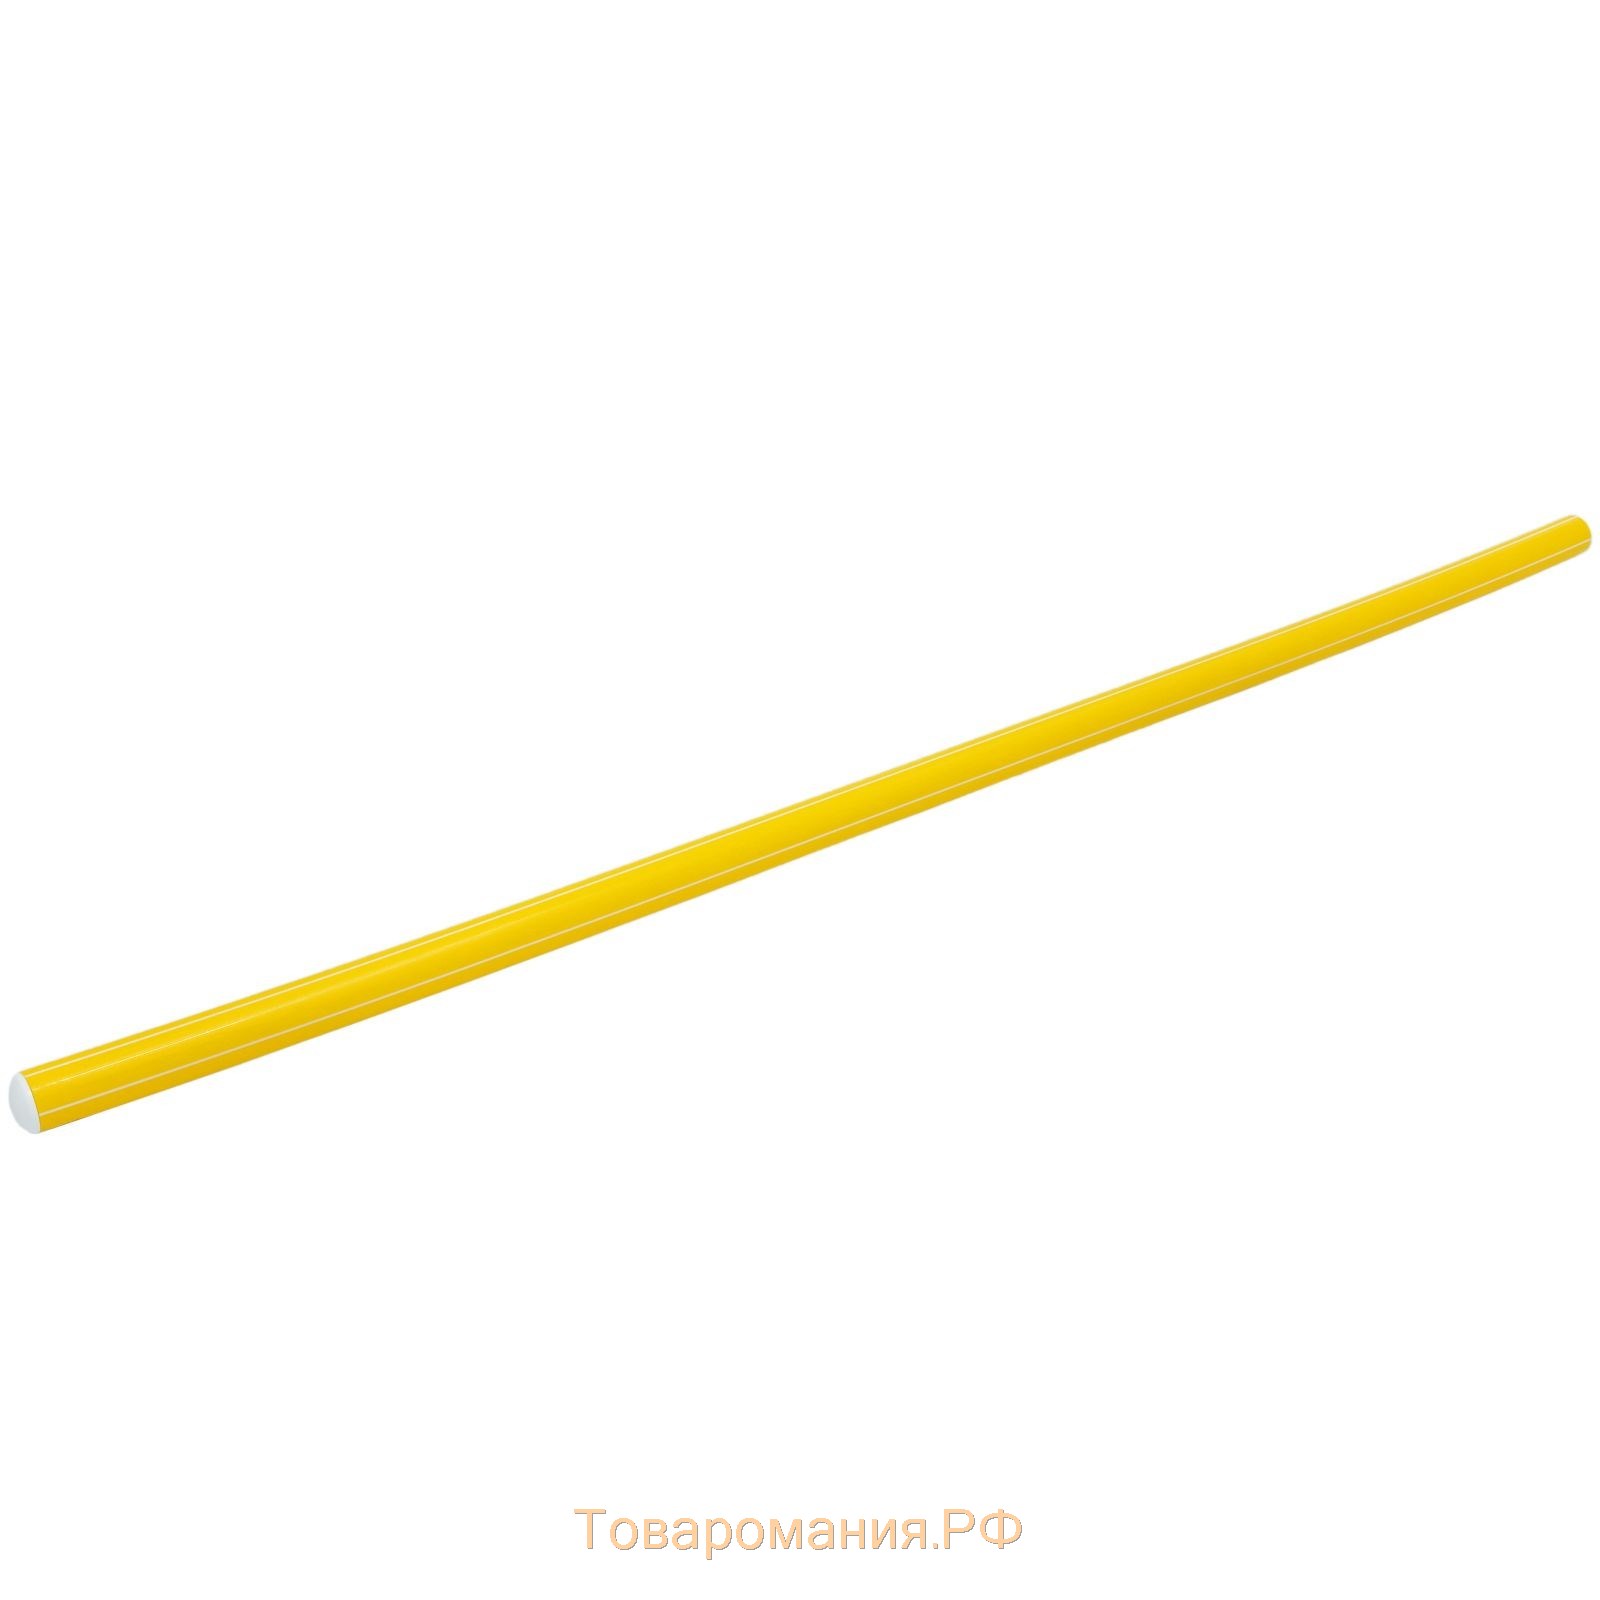 Палка гимнастическая 90 см, цвет жёлтый